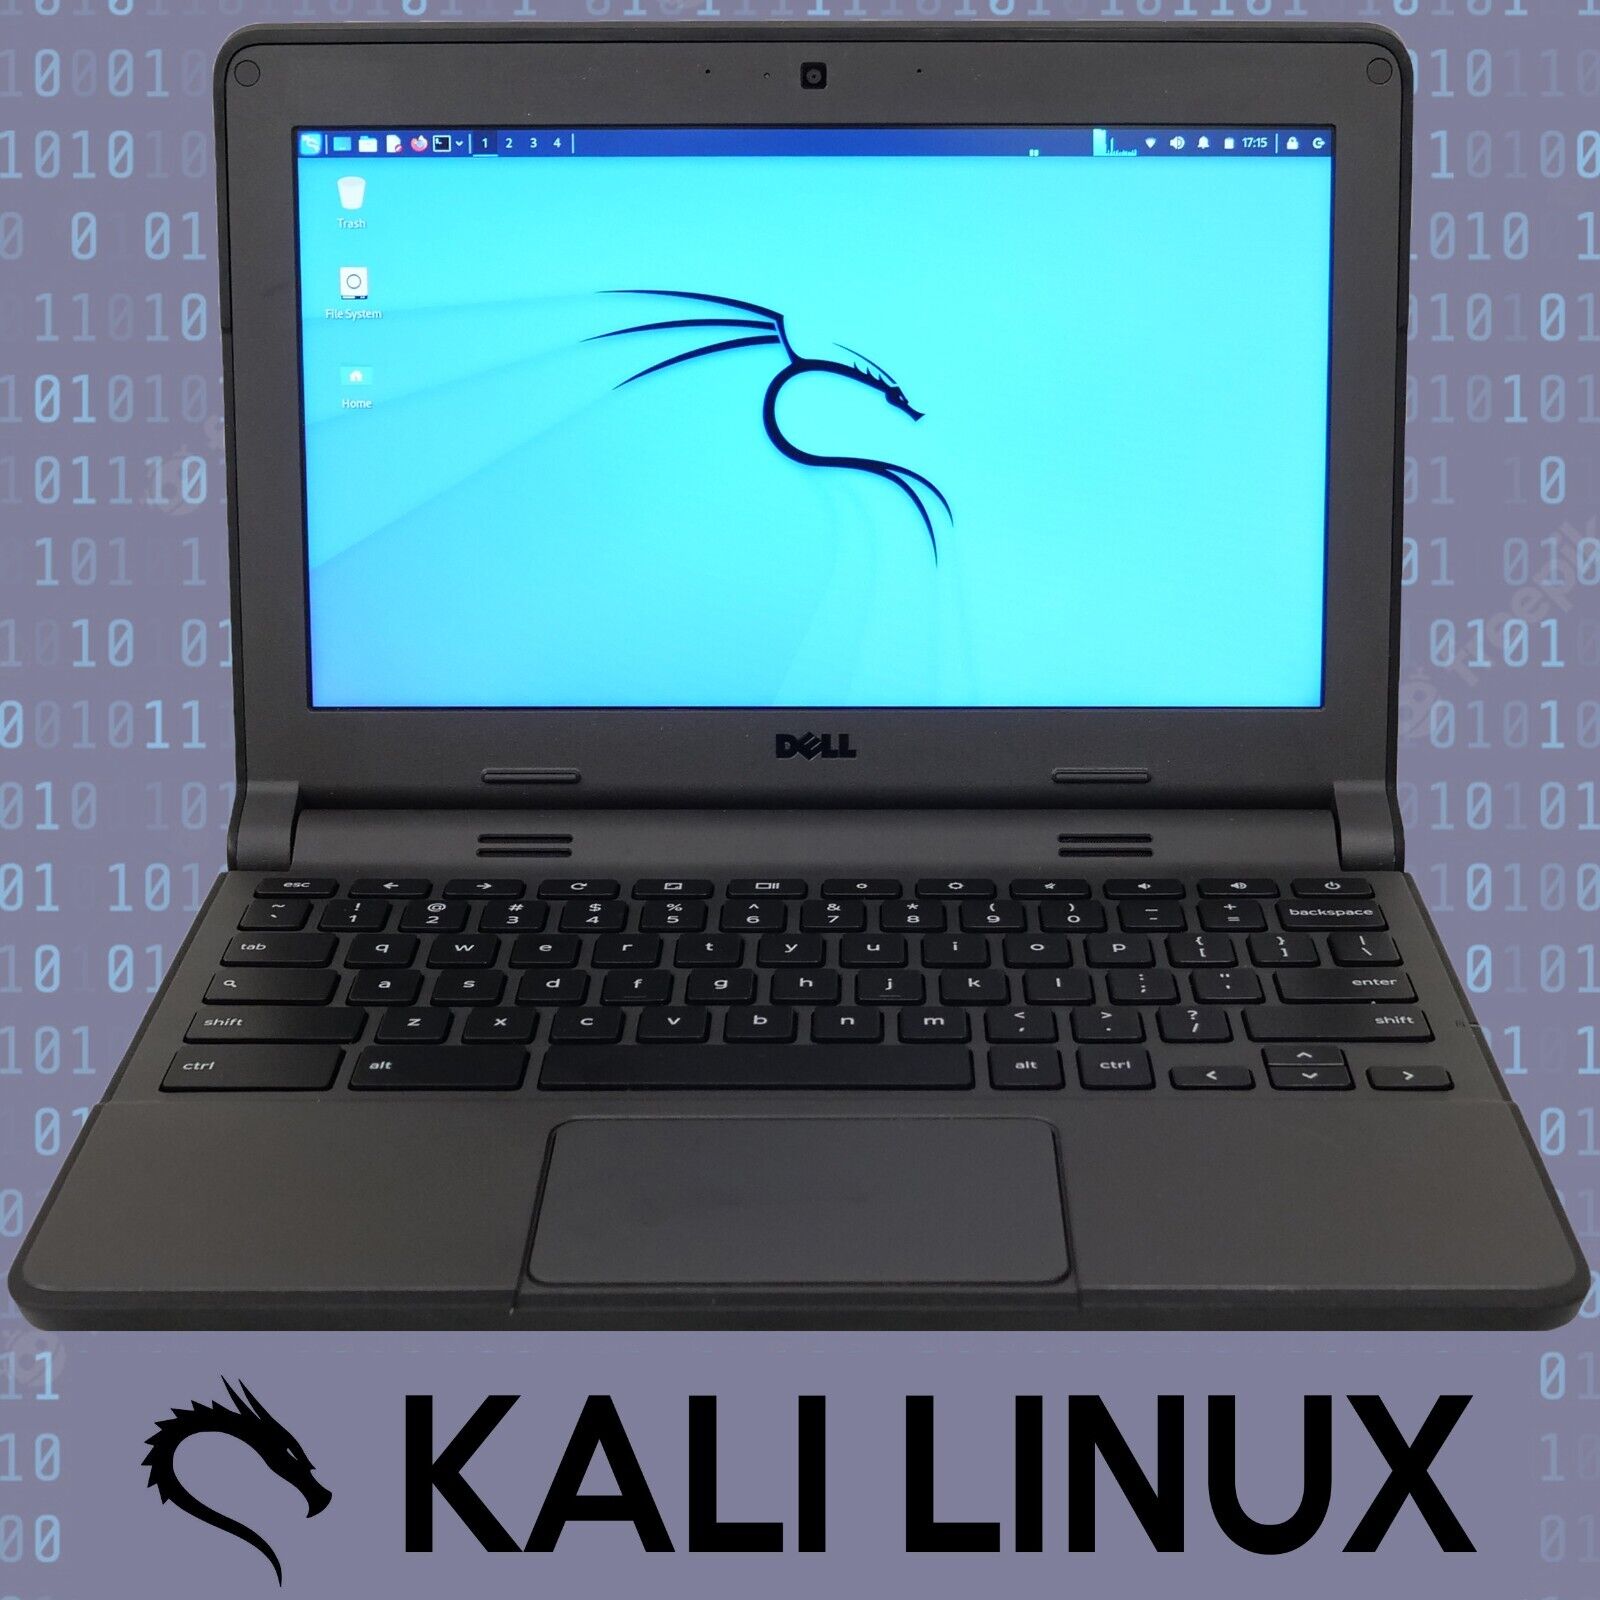 Kali Linux - 11.6